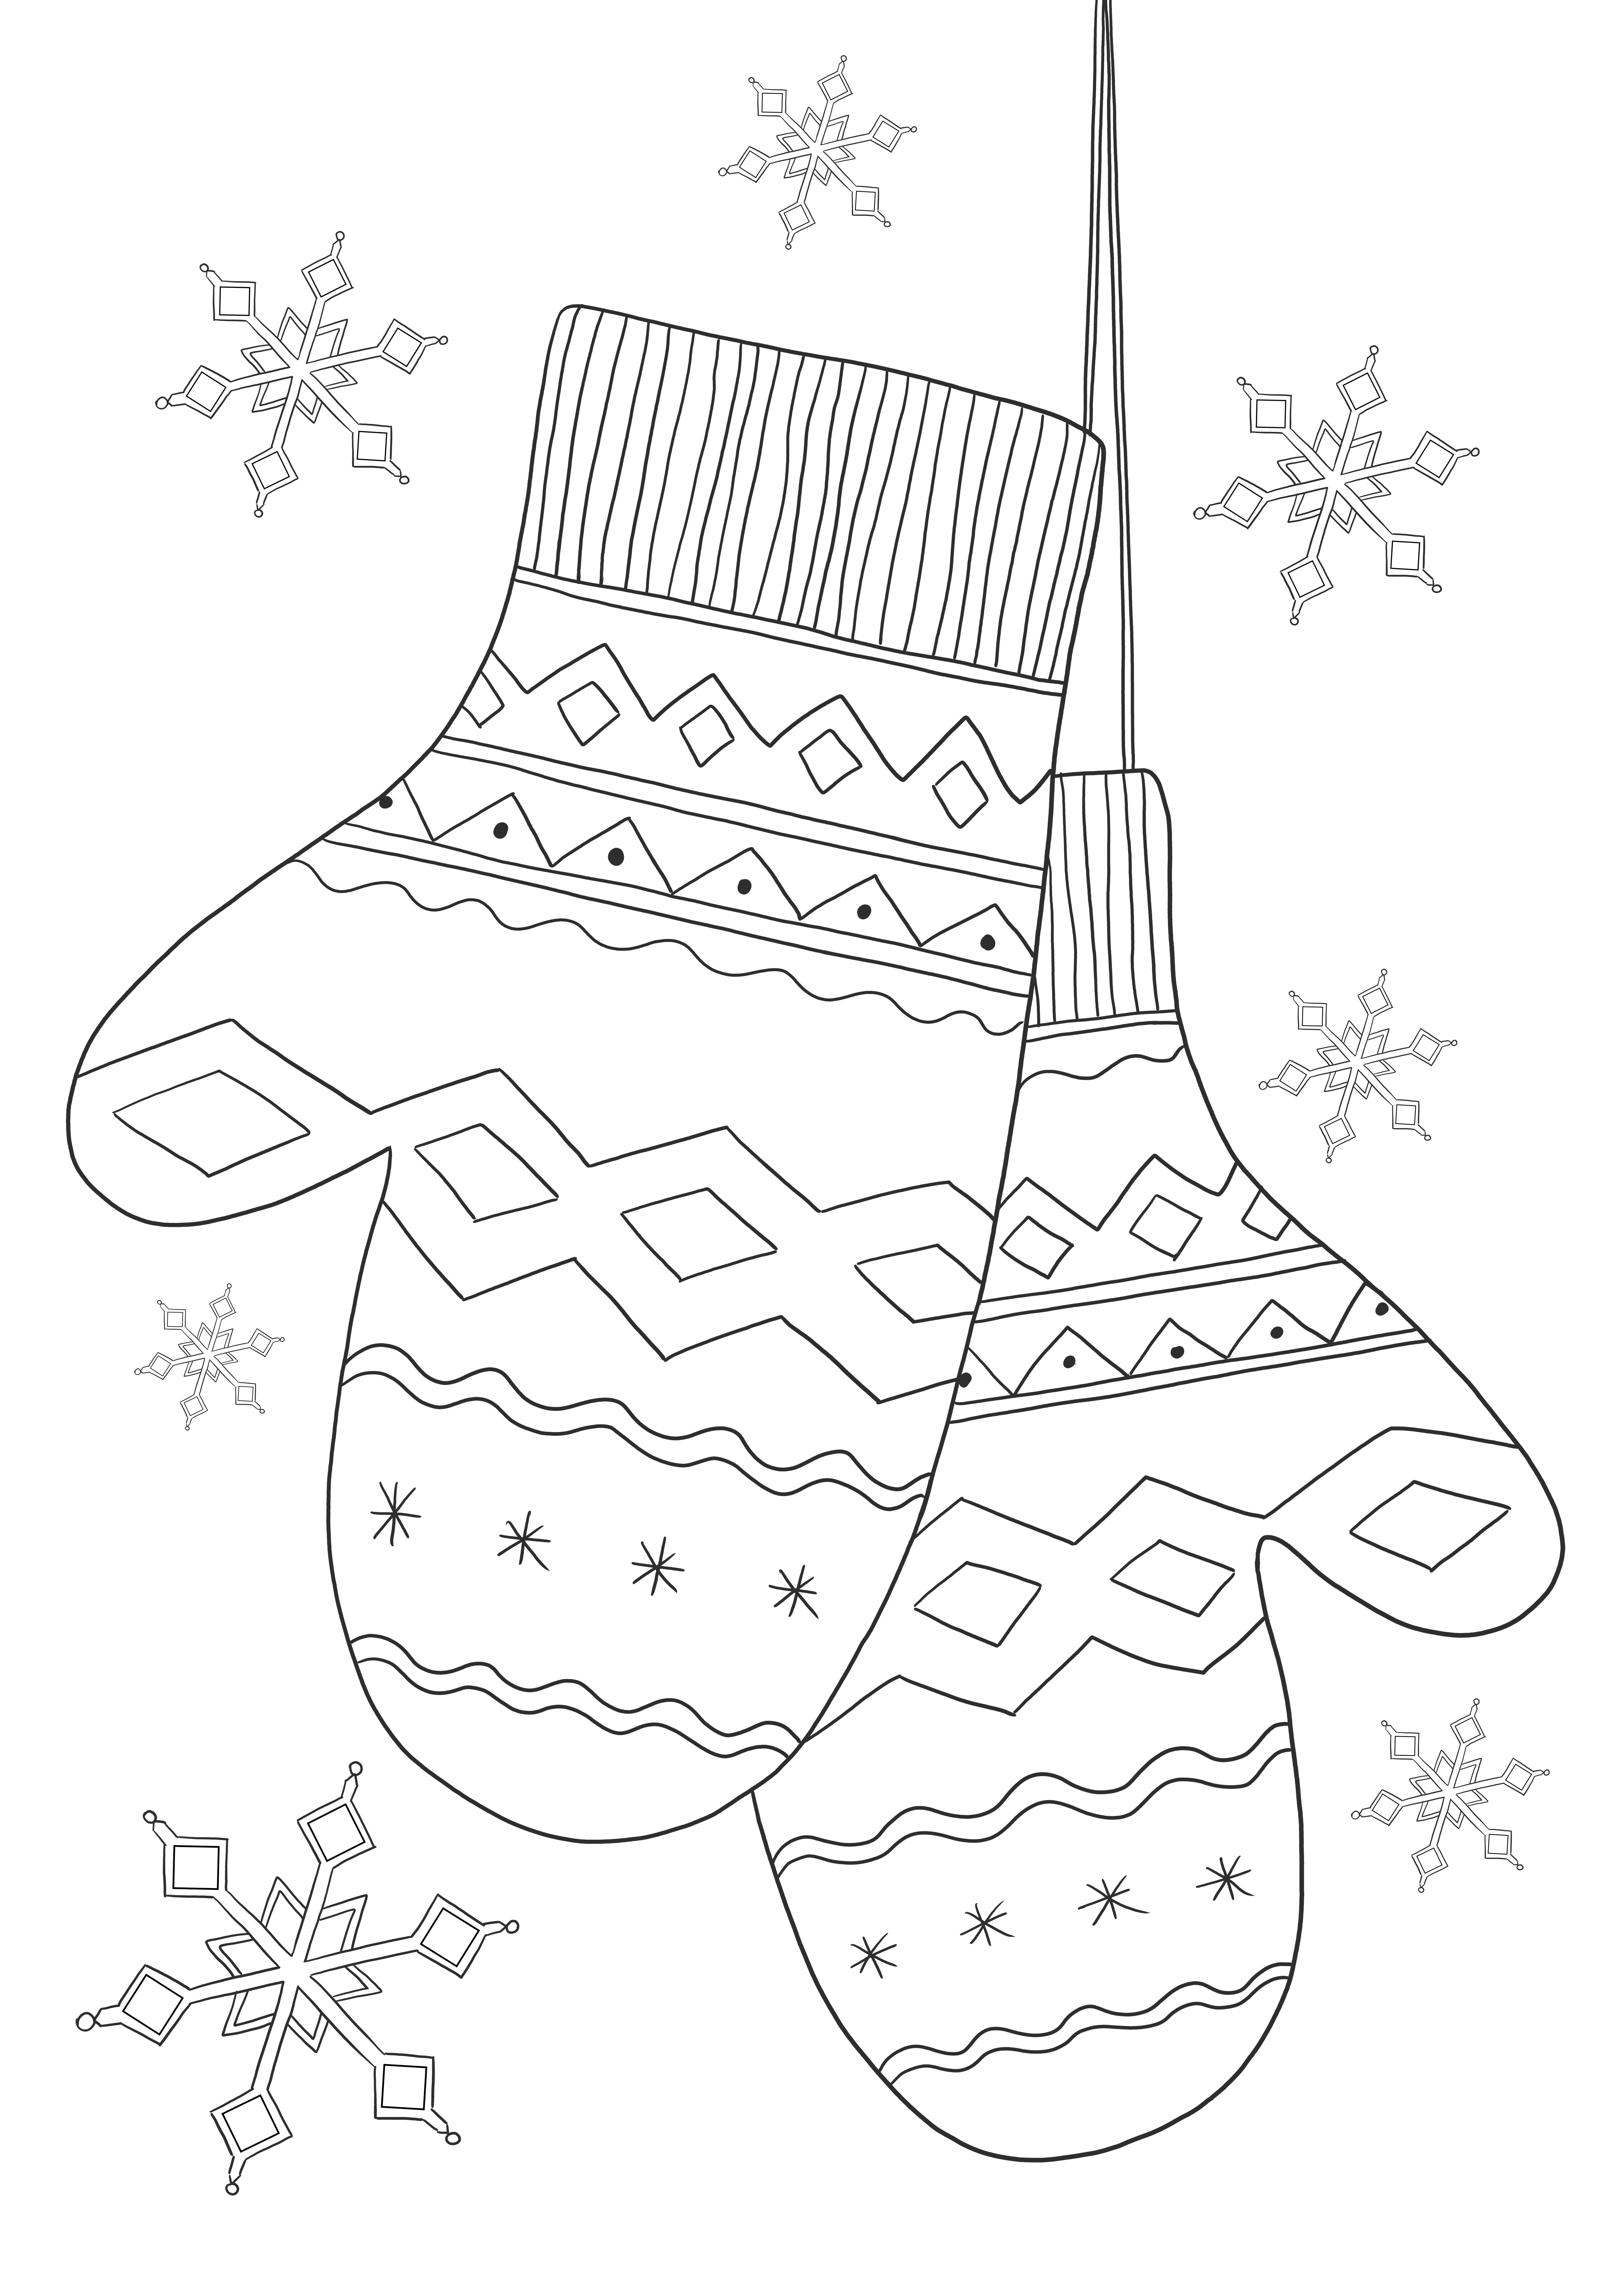 Lembar pendidikan bebas sarung tangan musim dingin untuk belajar tentang pakaian musim dingin